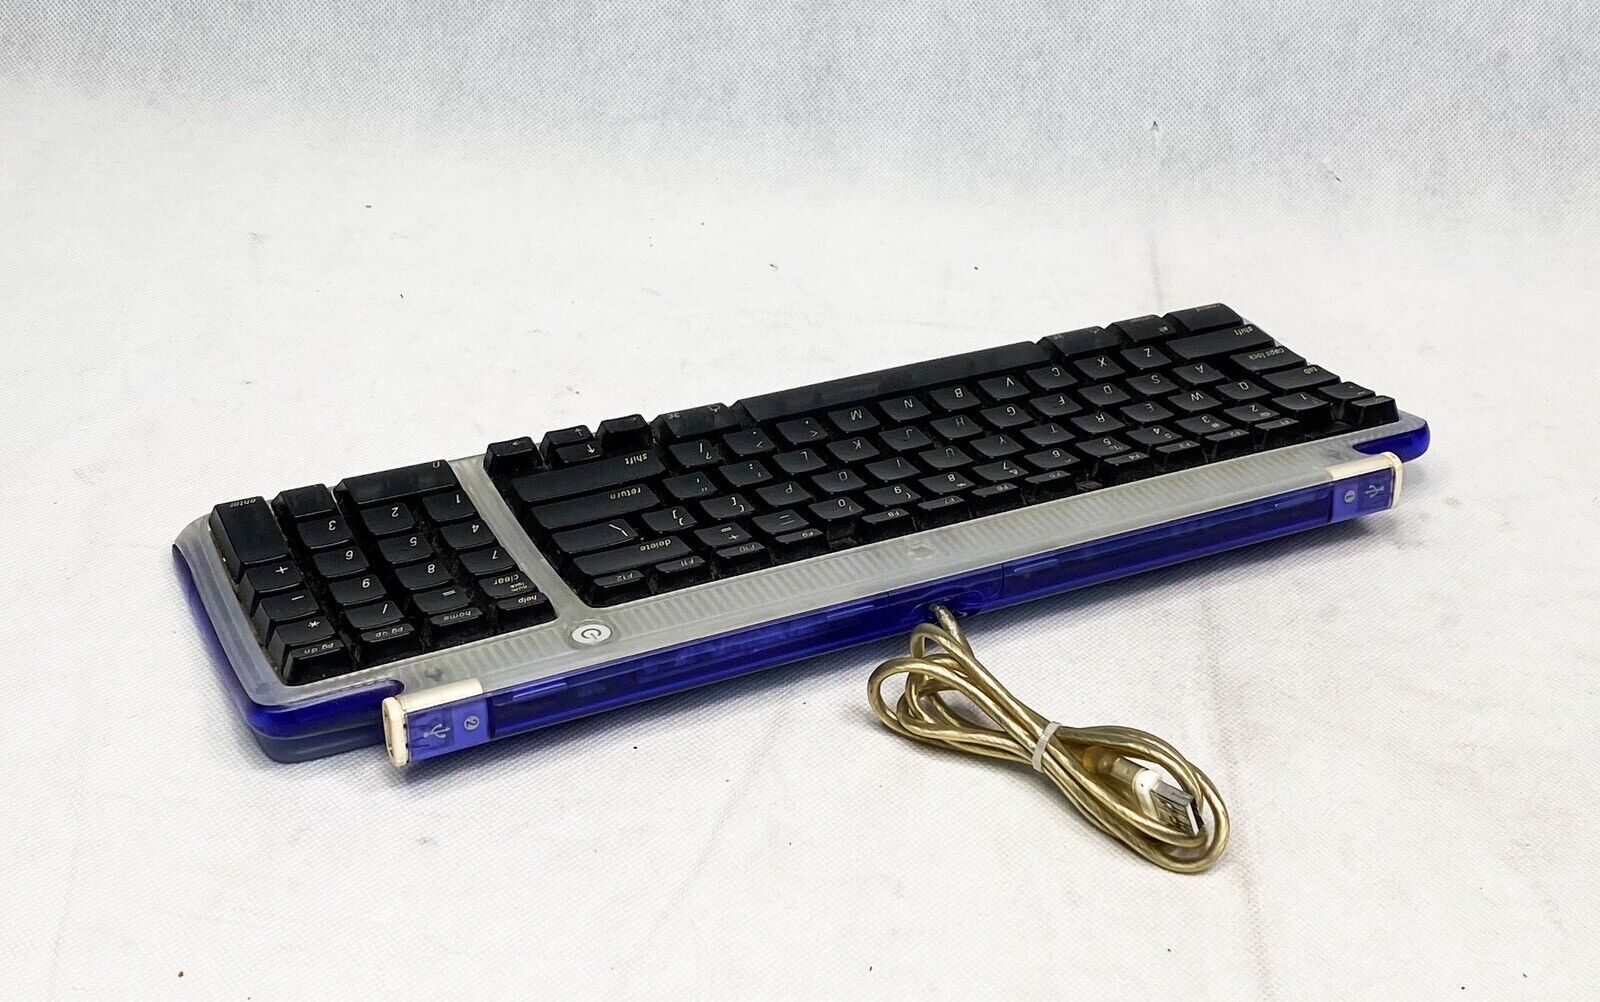 Vintage Apple M2452 iMac USB Keyboard 1998 Translucent Purple/Dark Blue RARE